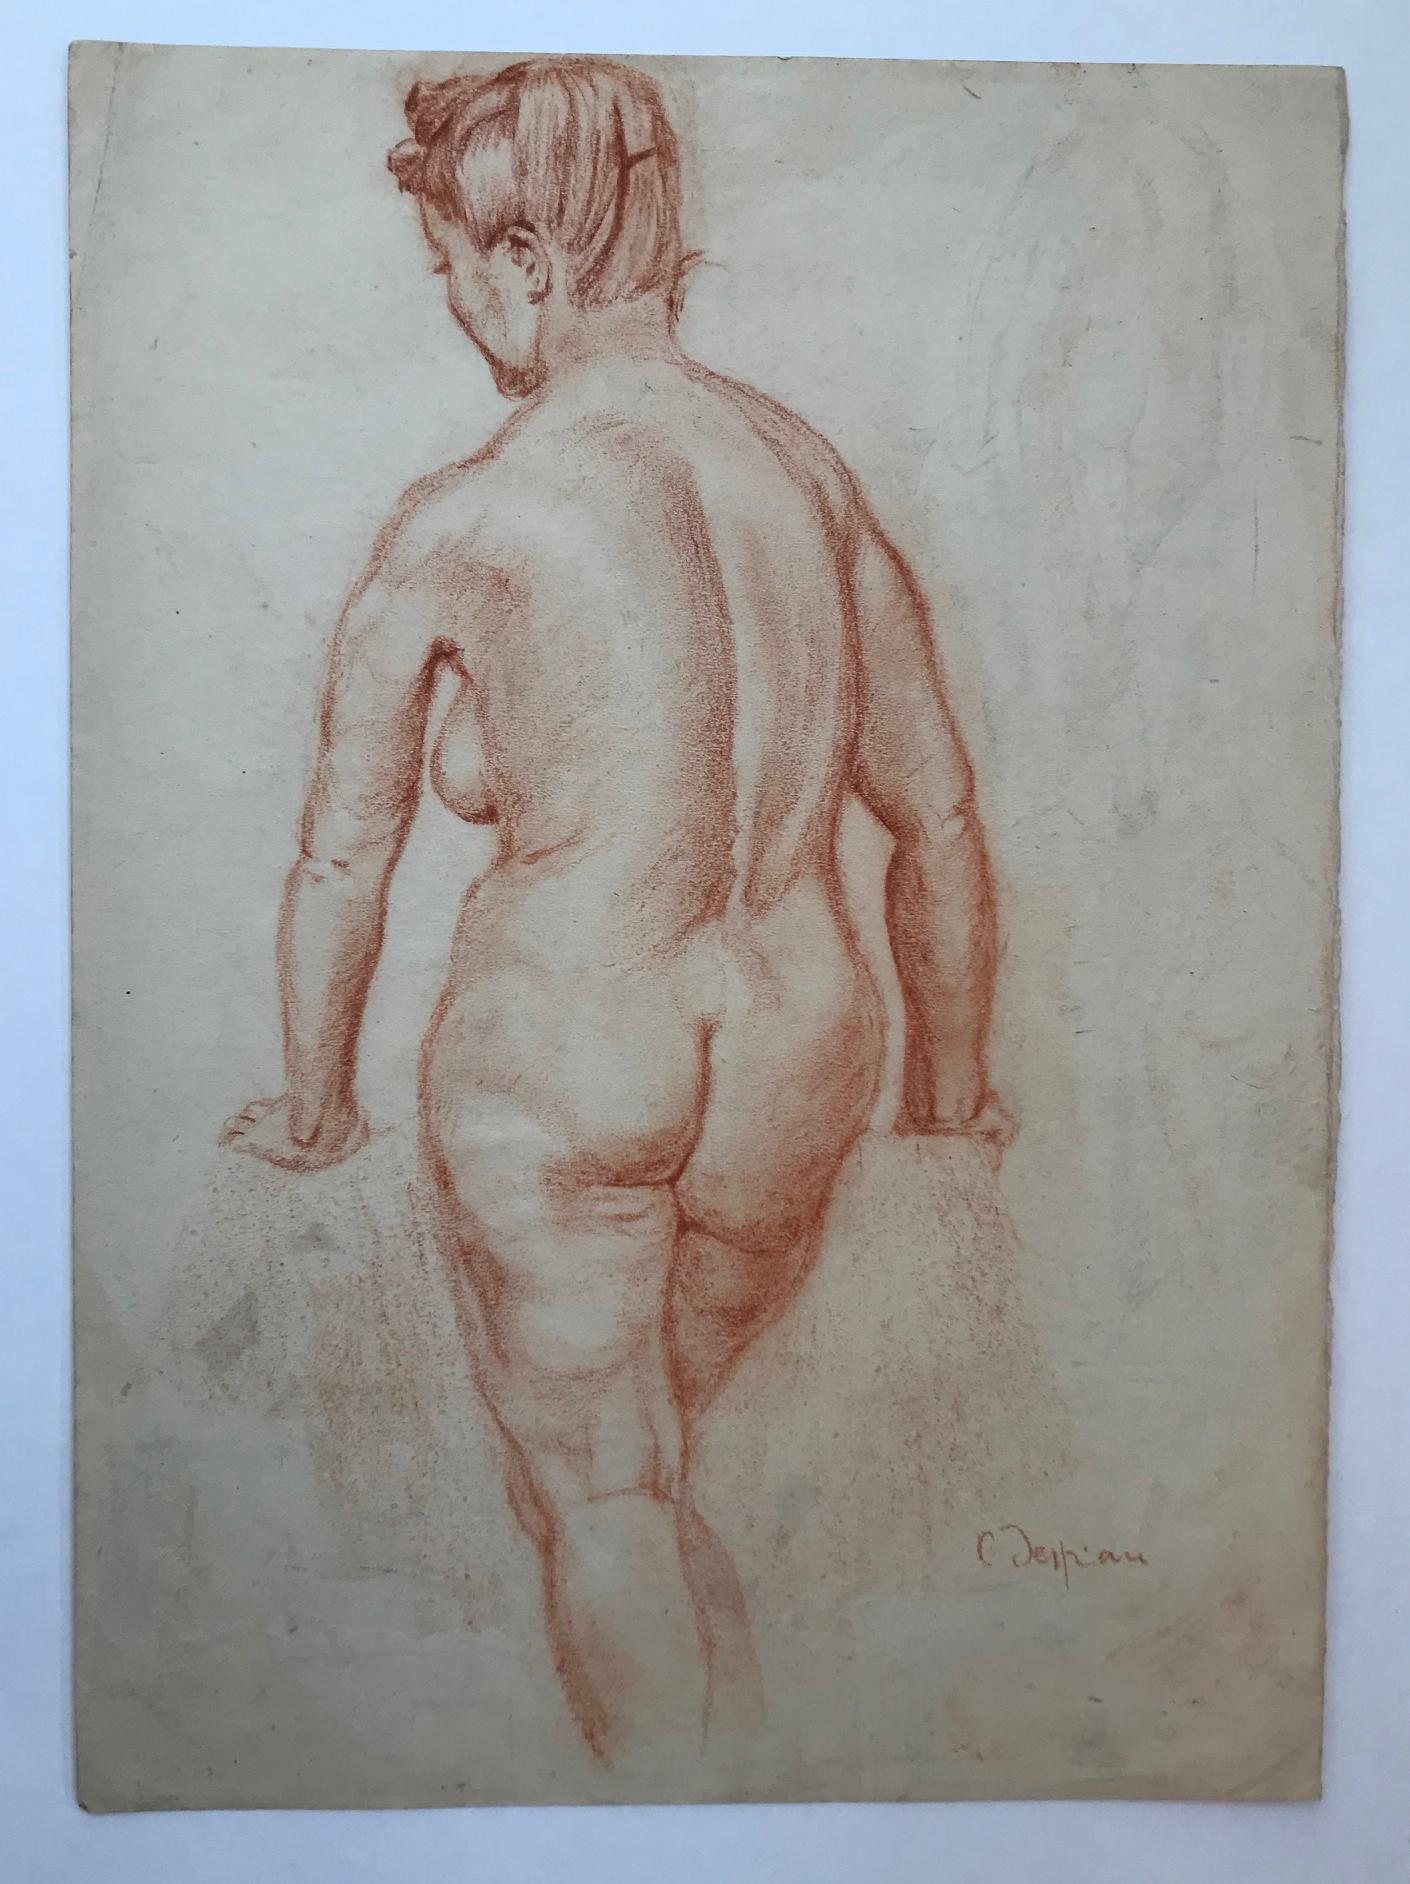 Female Nude - Art by Charles Despiau